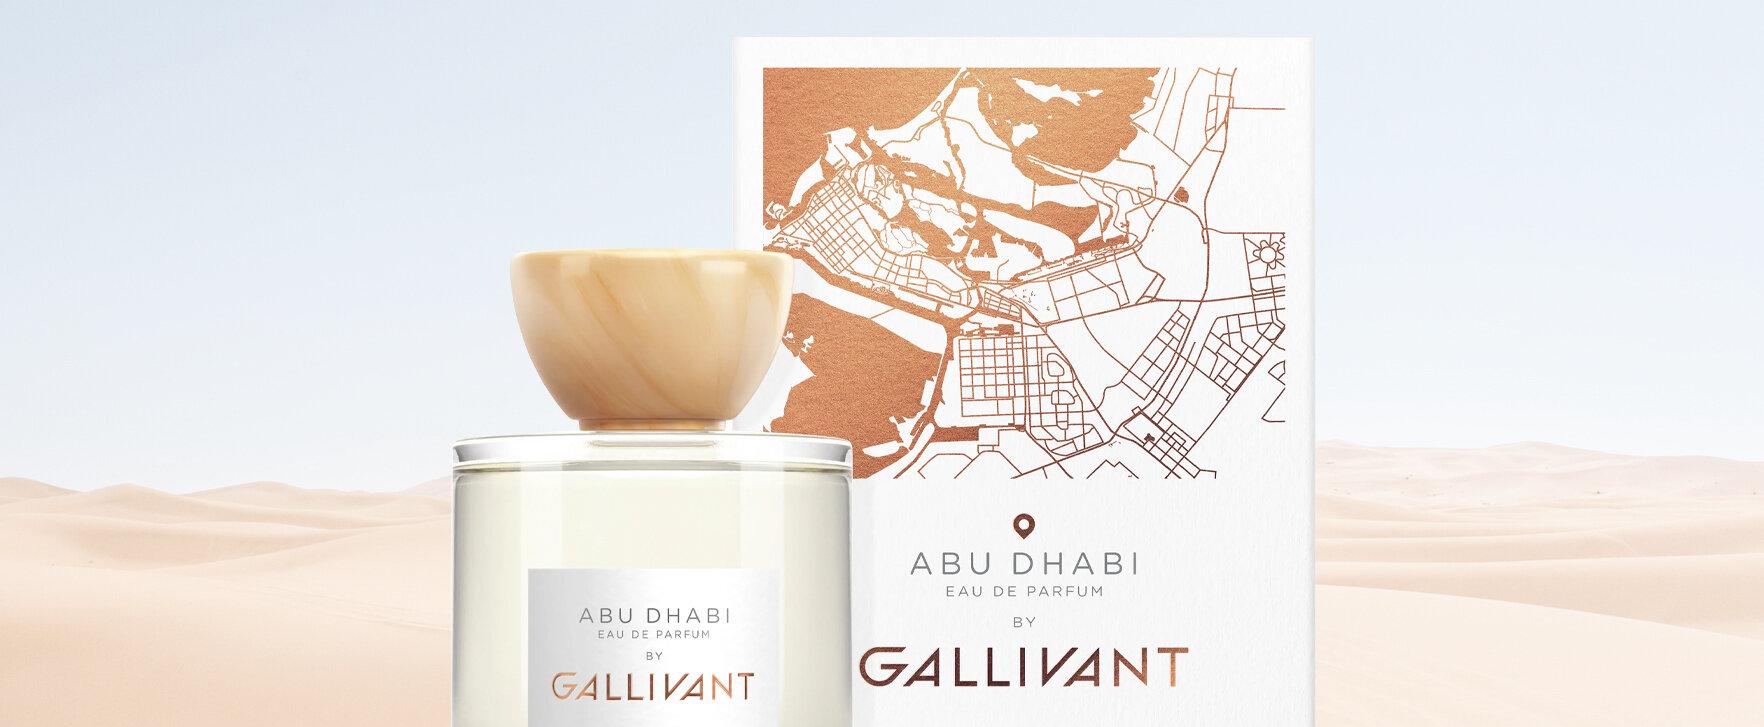 „Abu Dhabi“ - neue Kreation von Gallivant führt in die heiße Wüste Rub al Khali